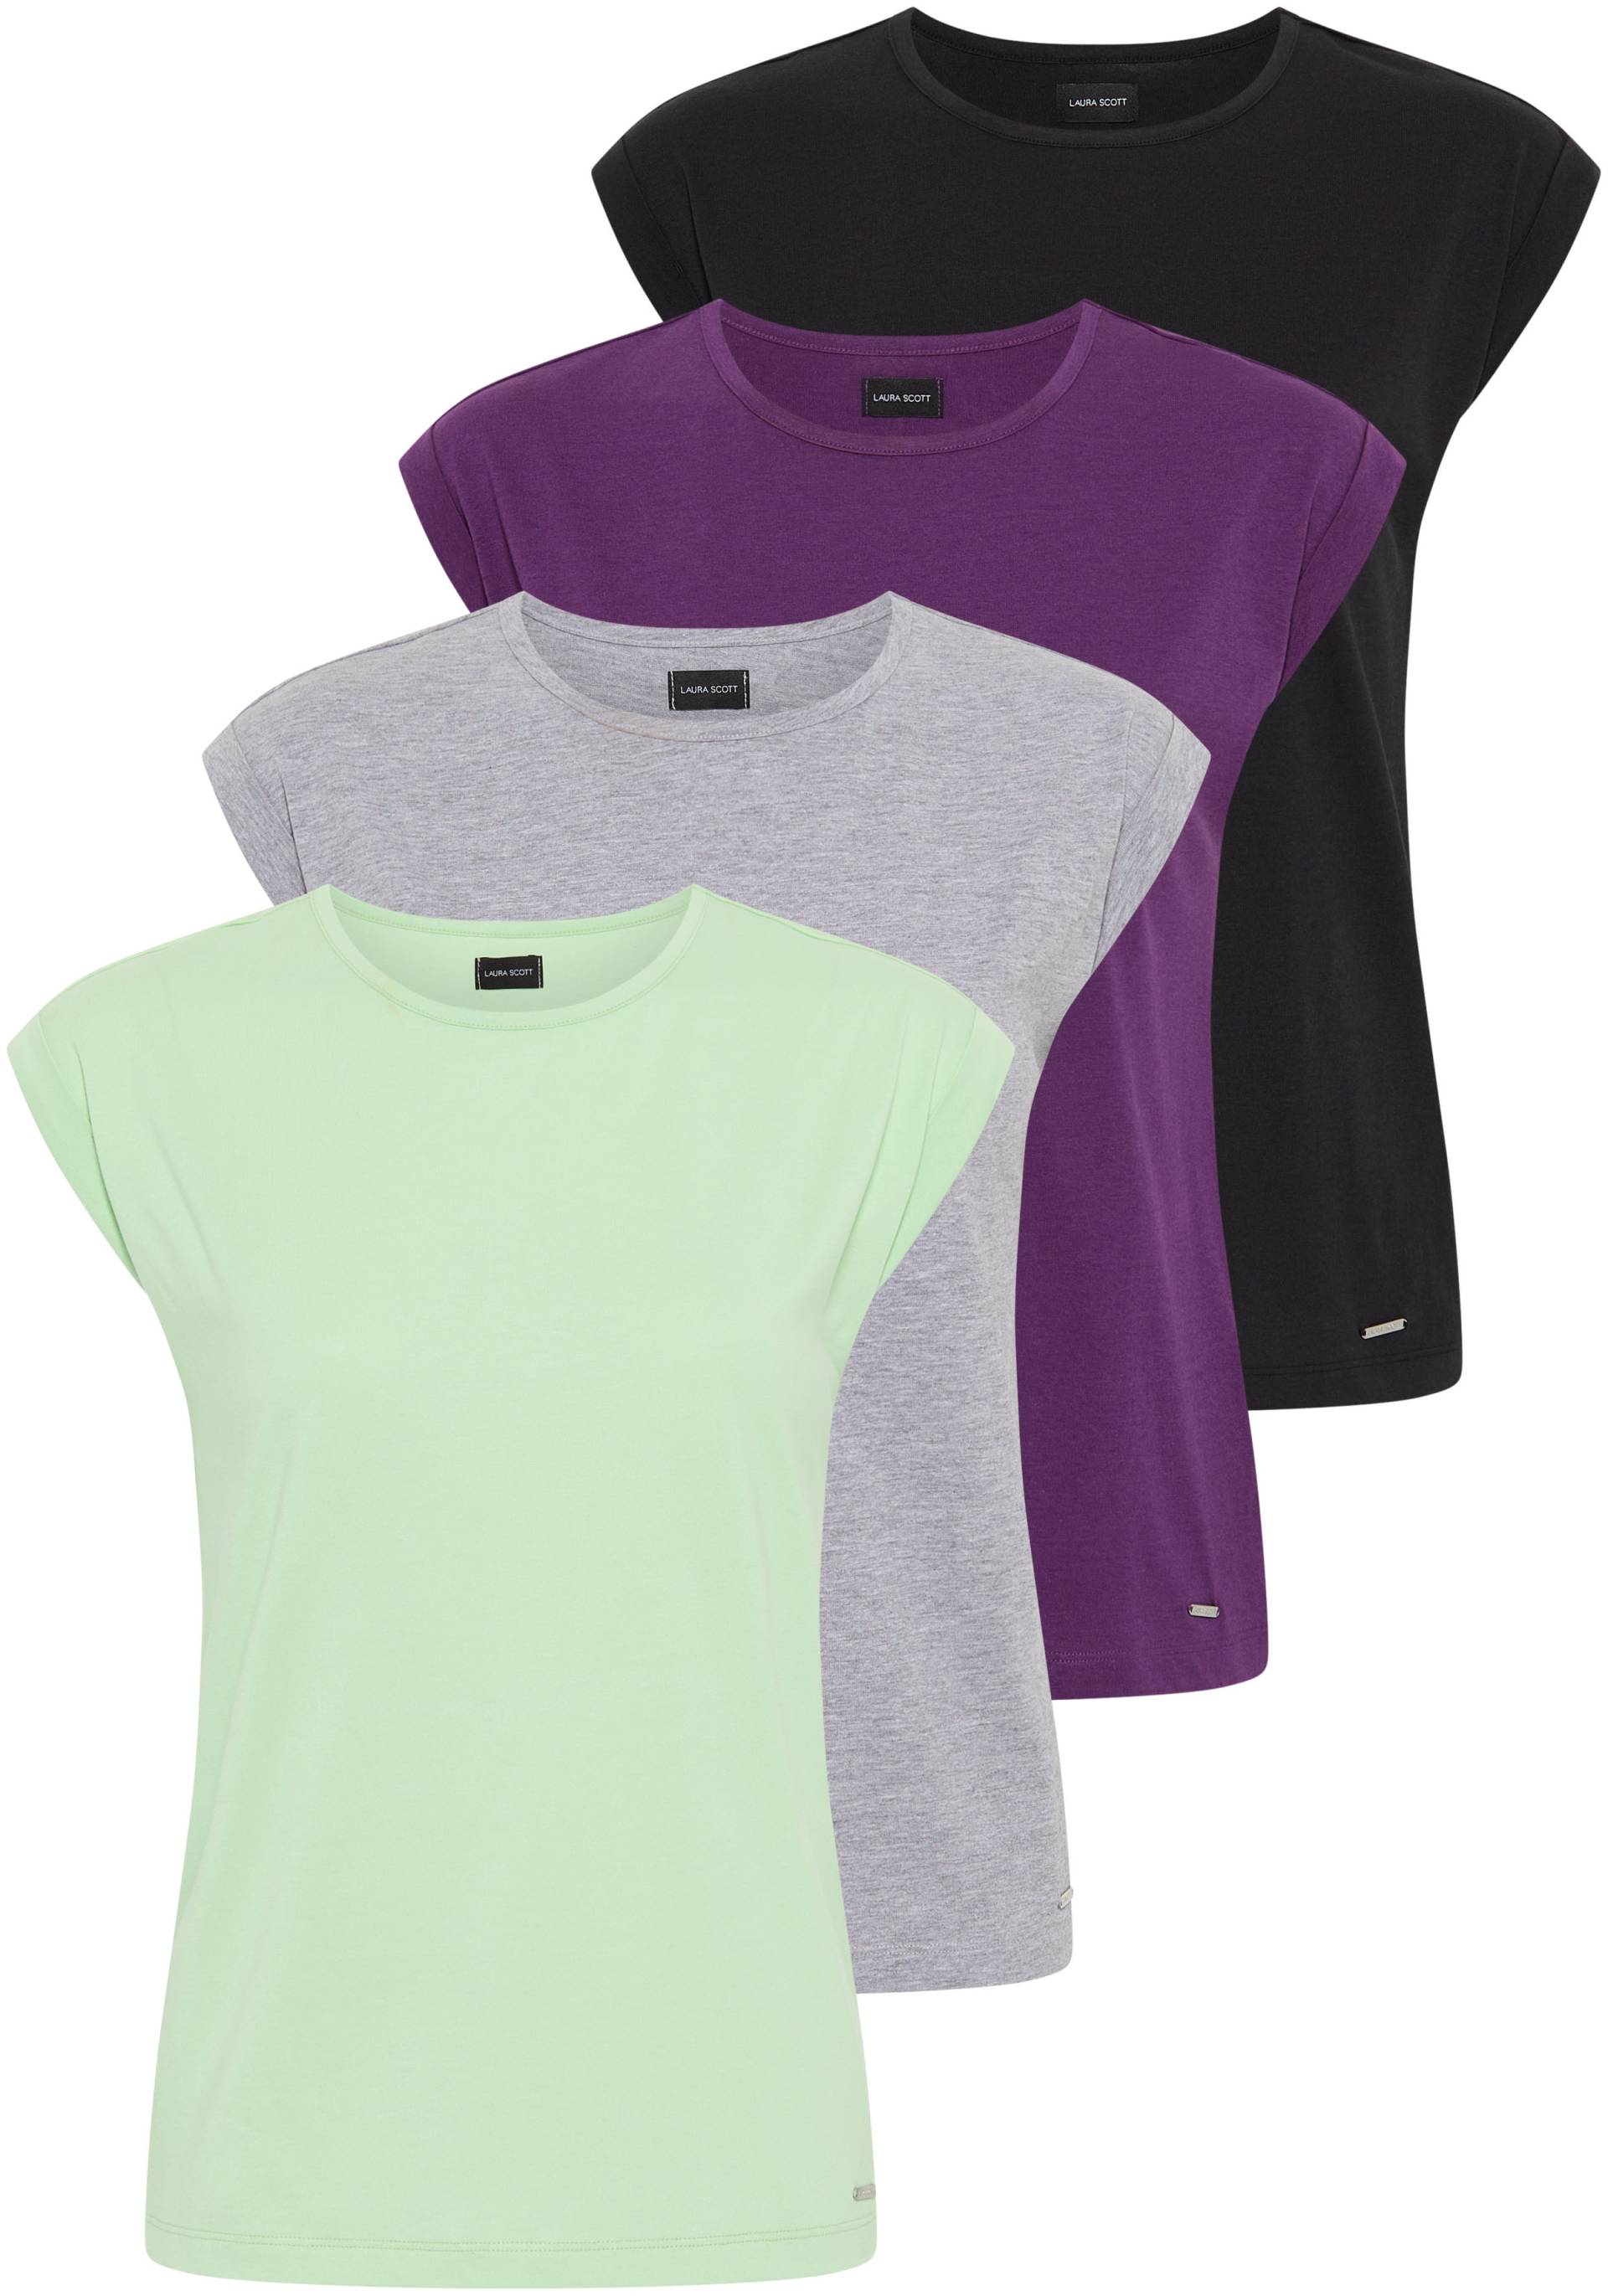 Laura Scott T-Shirt, in modernen Farben - NEUE KOLLEKTION von laura scott